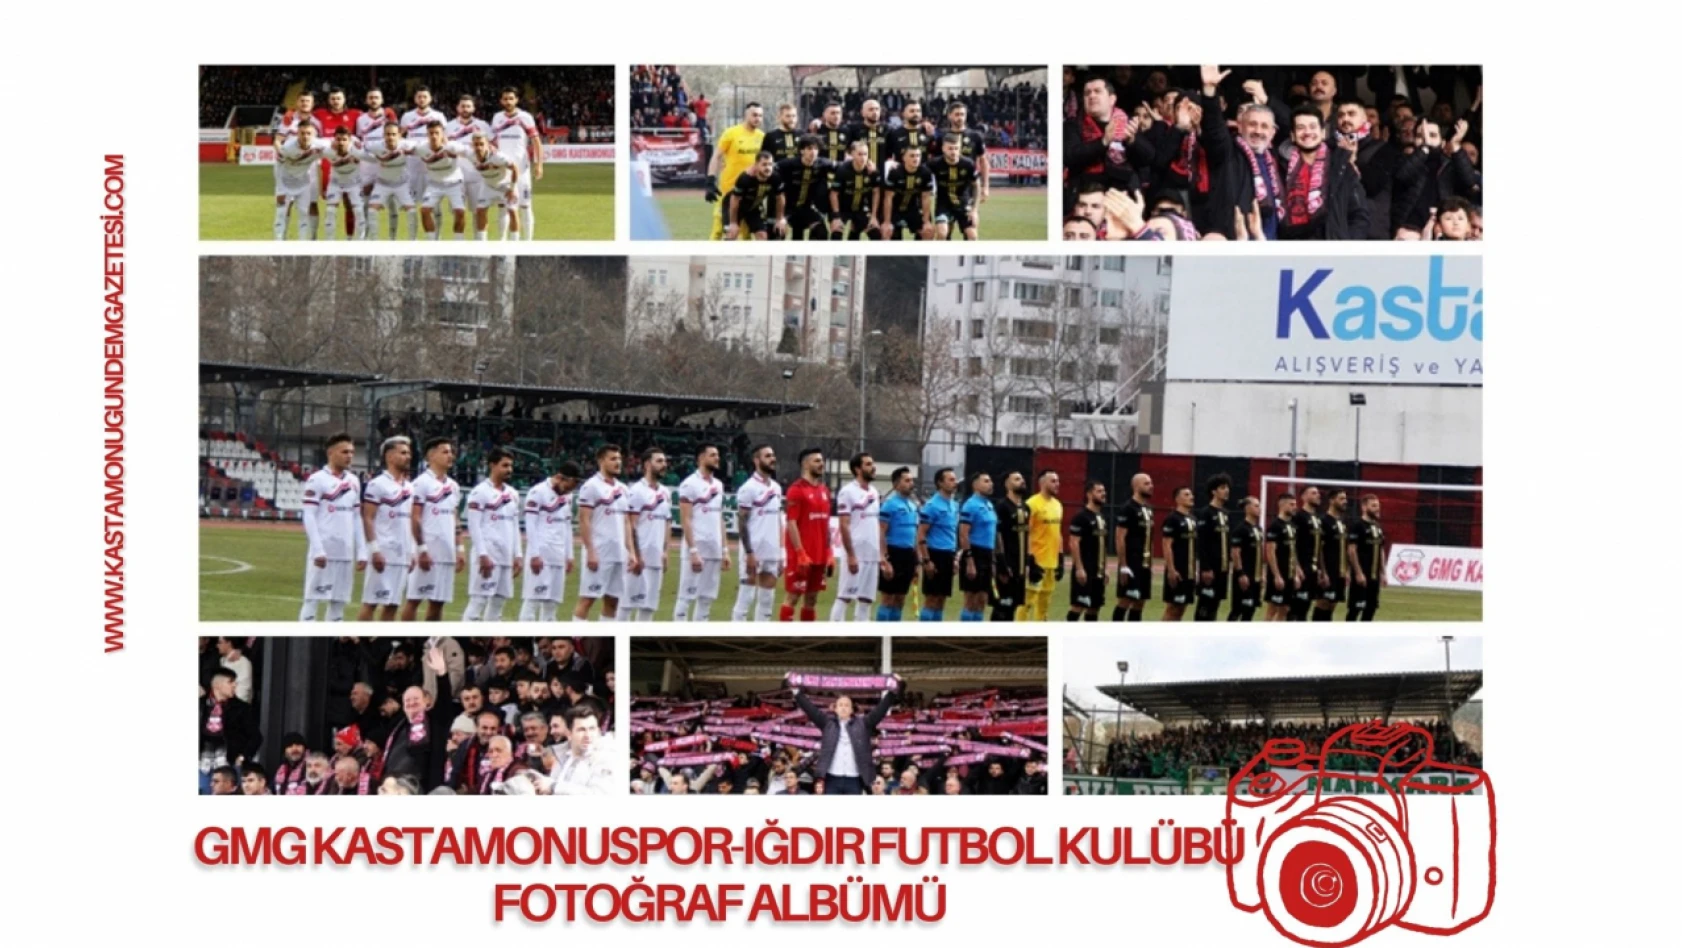 GMG Kastamonuspor 1-1 Iğdır Futbol Kulübü